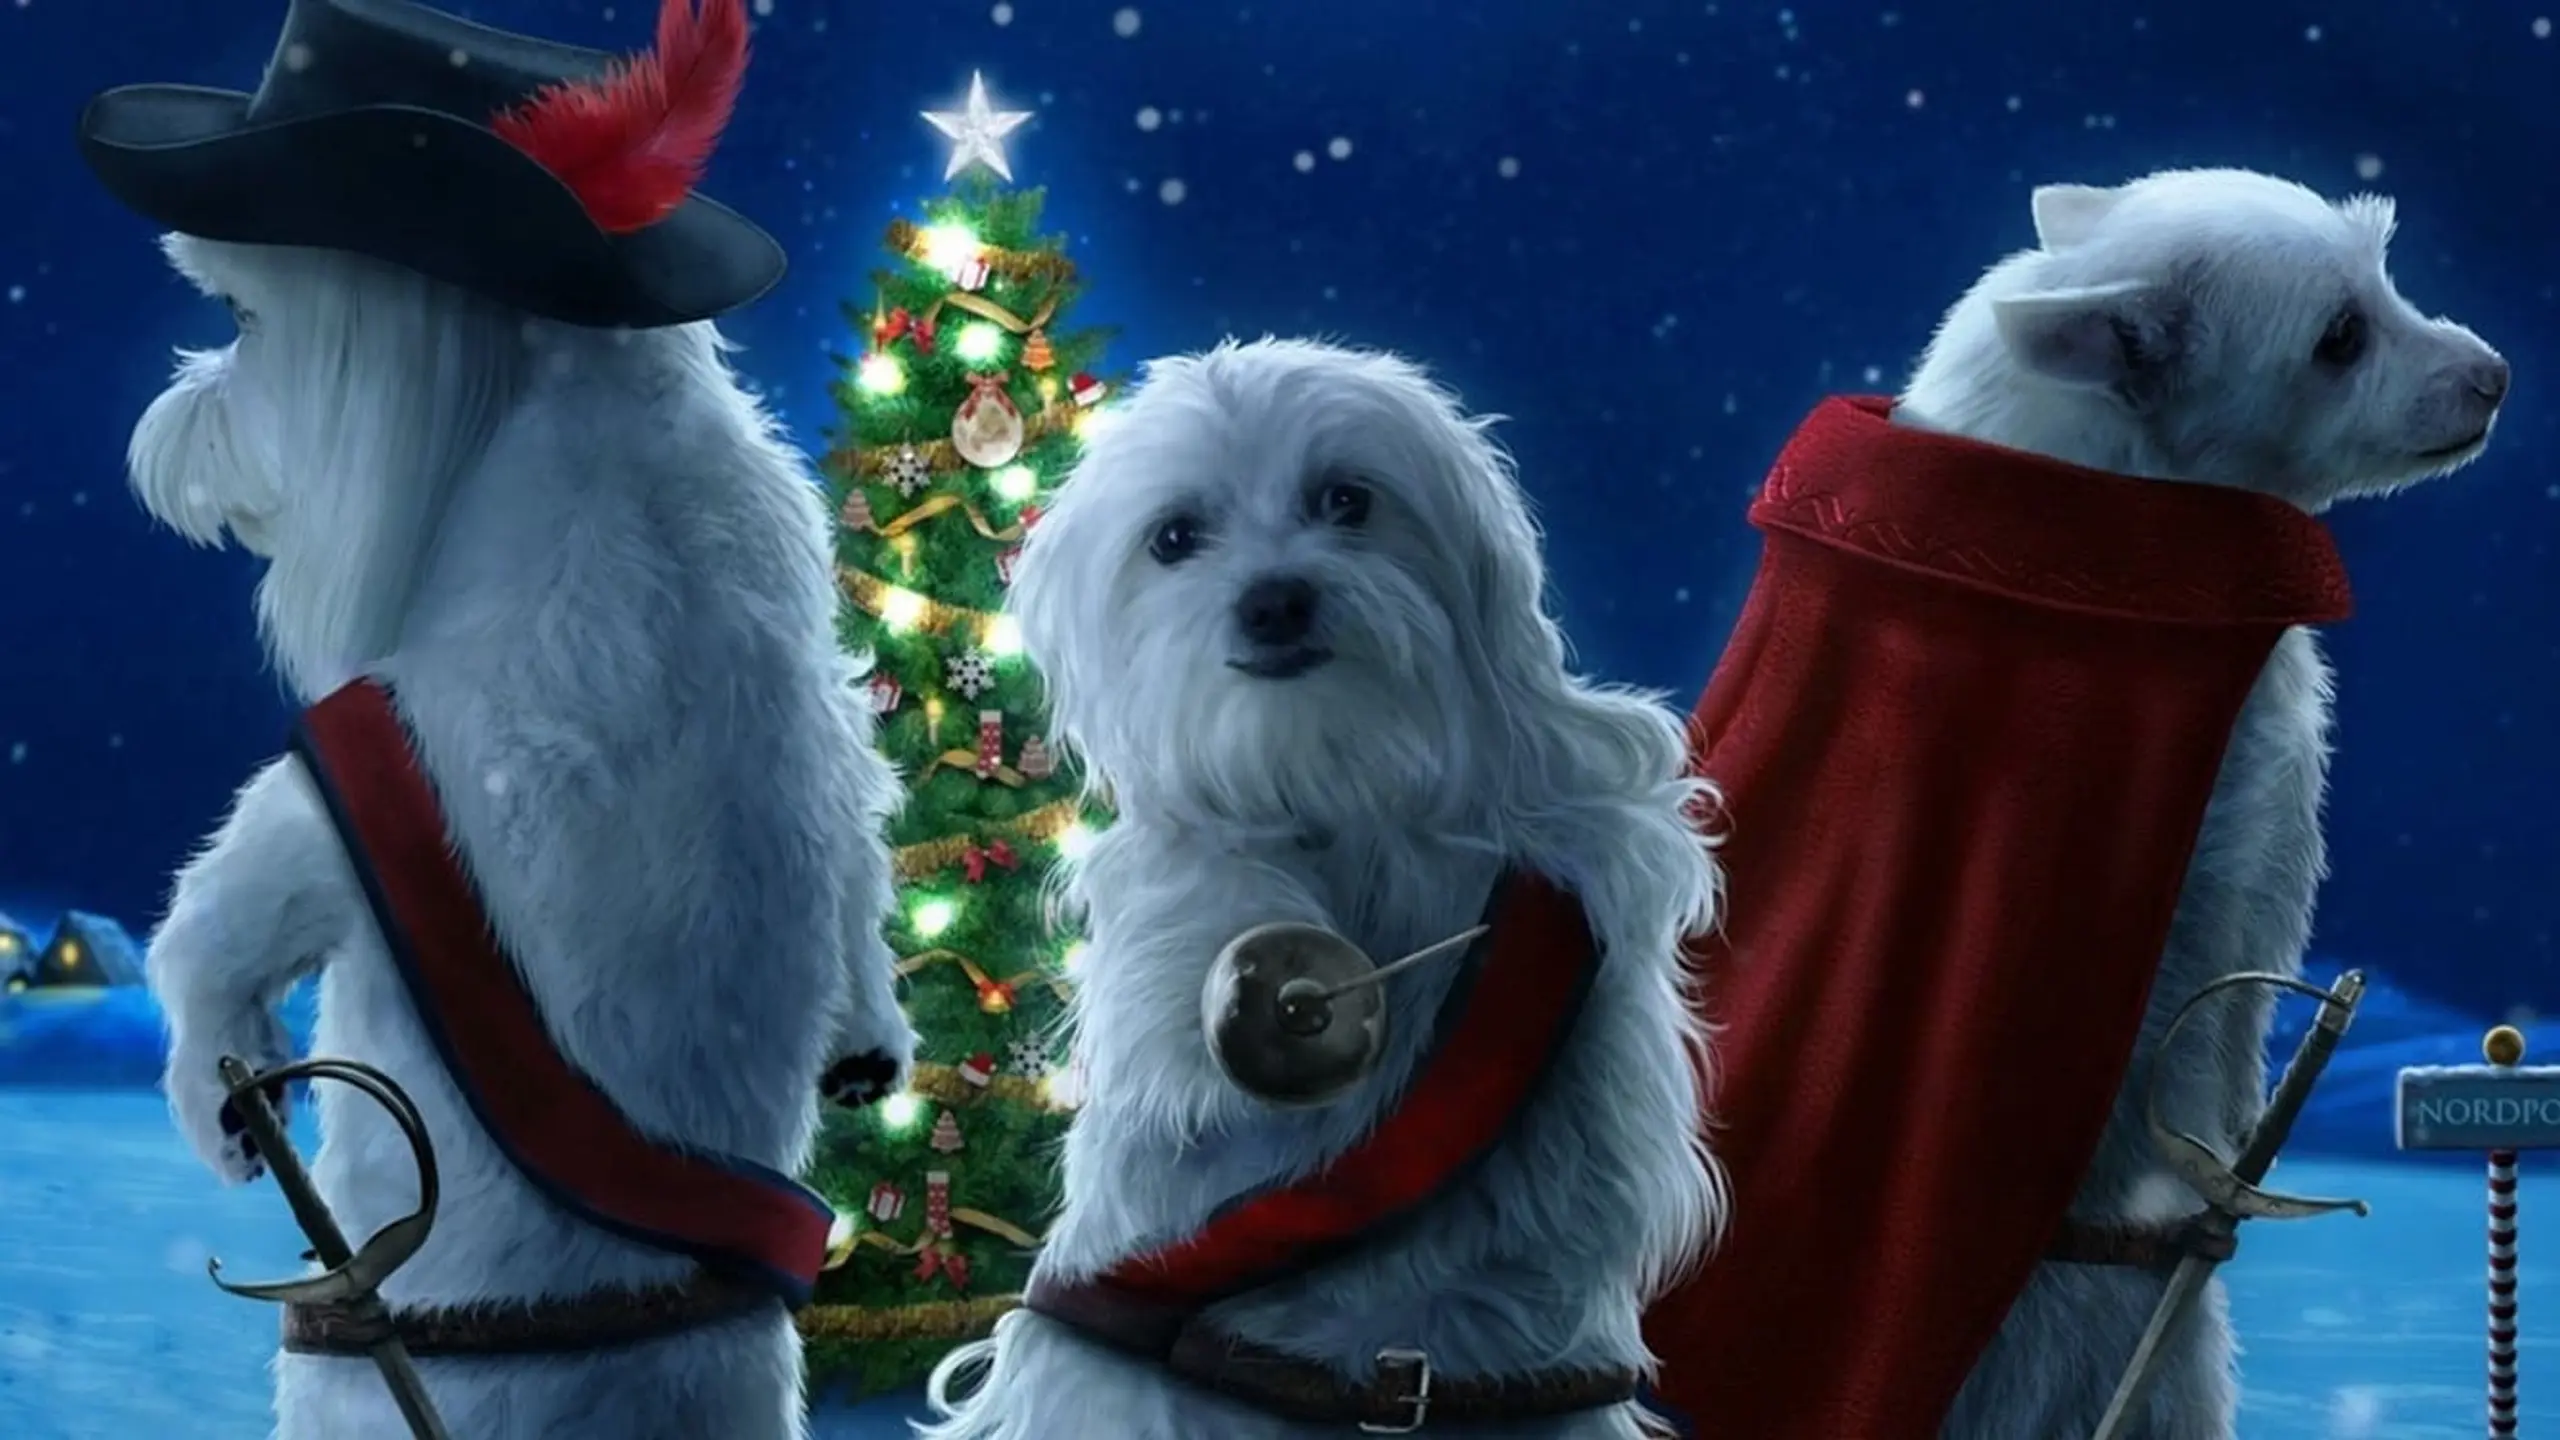 Die Drei Hundketiere Retten Weihnachten